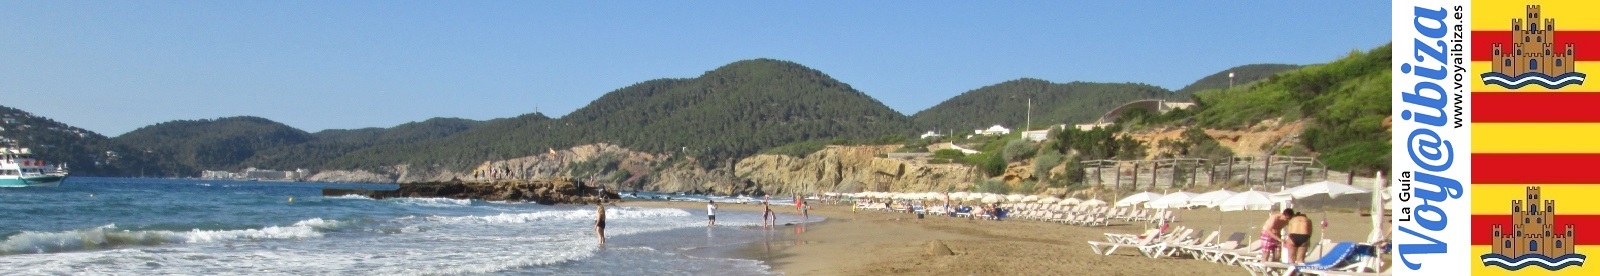 Playas de Santa Eulalia - Ibiza